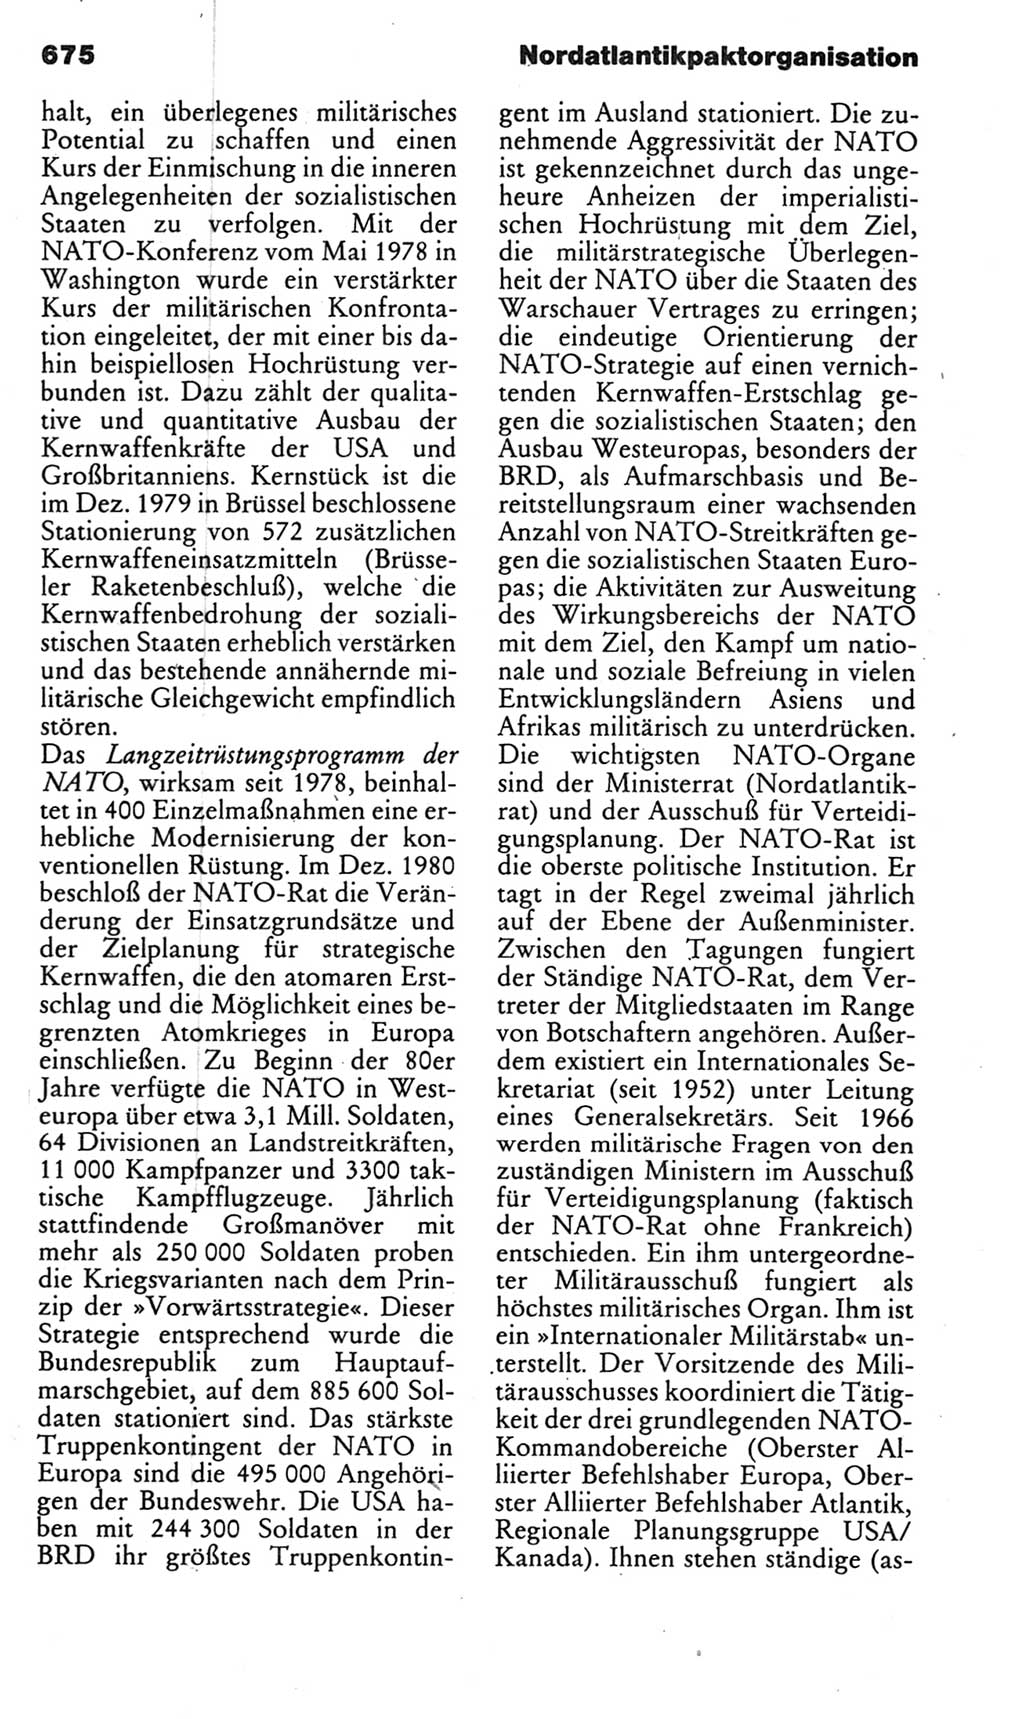 Kleines politisches Wörterbuch [Deutsche Demokratische Republik (DDR)] 1985, Seite 675 (Kl. pol. Wb. DDR 1985, S. 675)